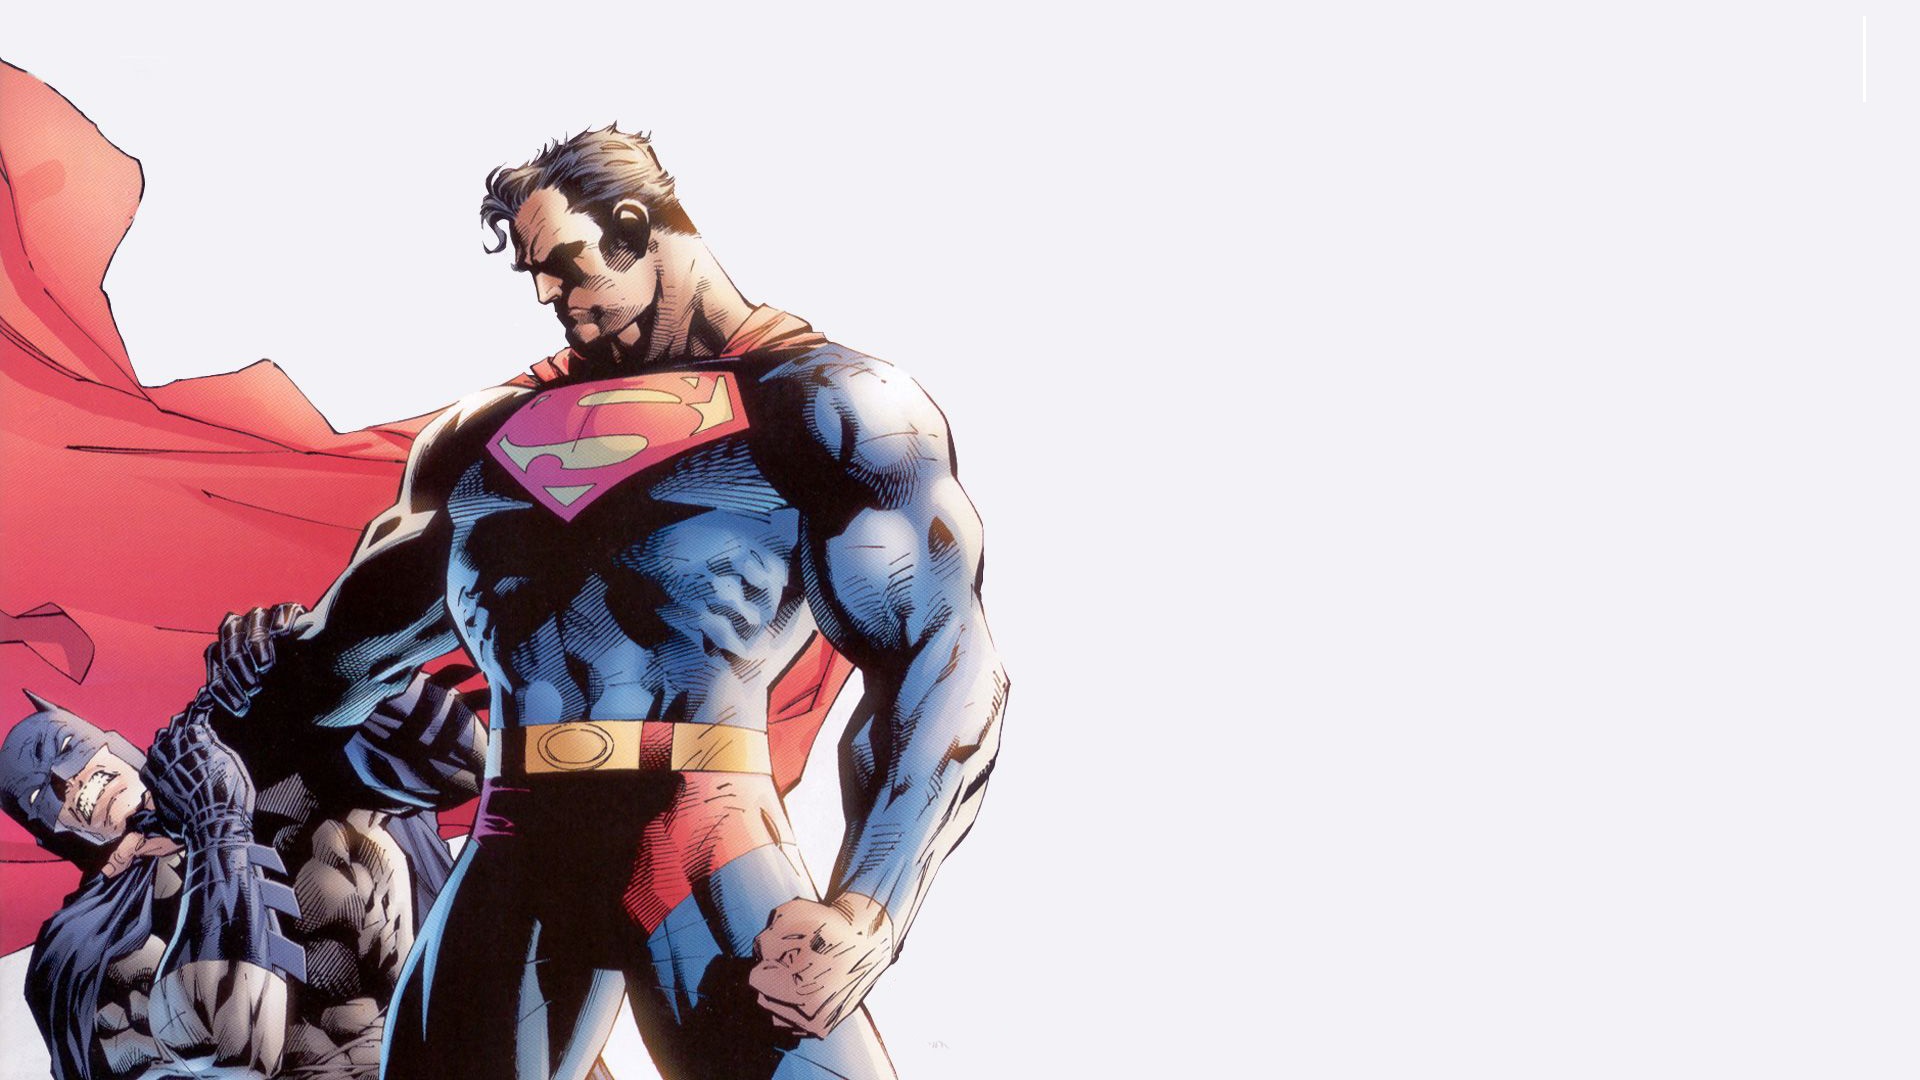 Скачать обои Бэтмен Против Супермен на телефон бесплатно